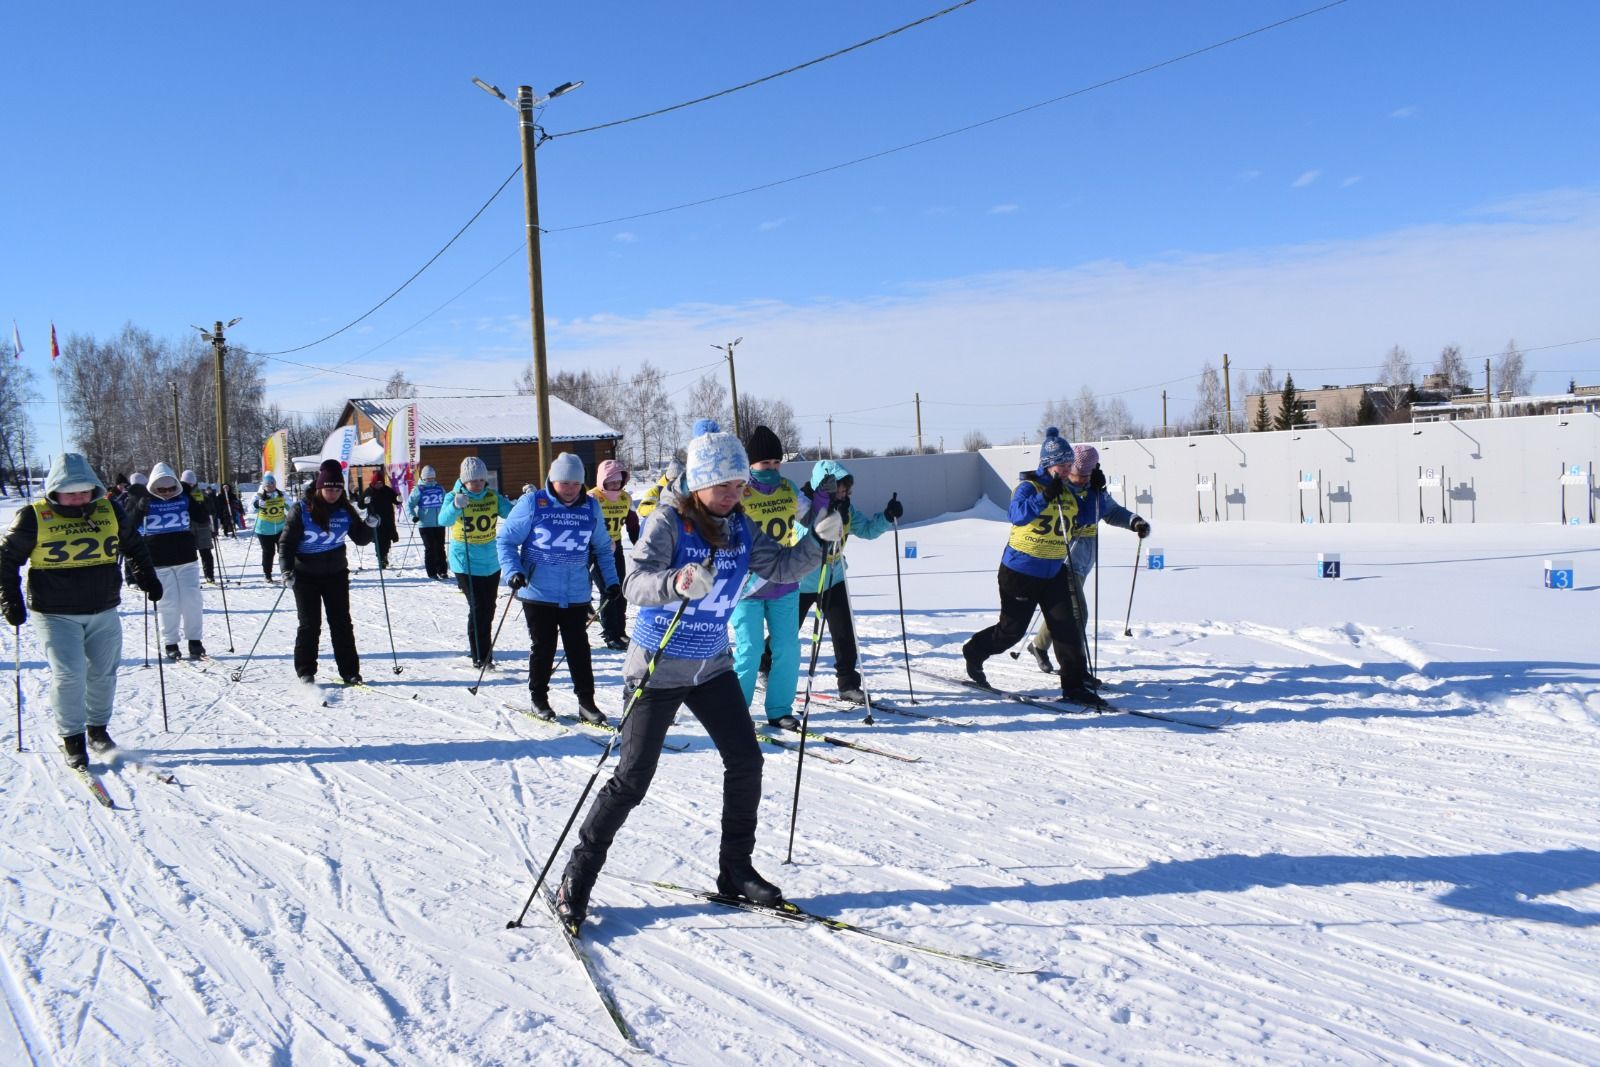 Год семьи на лыжных гонках: спорт, достижения и важность семейных ценностей